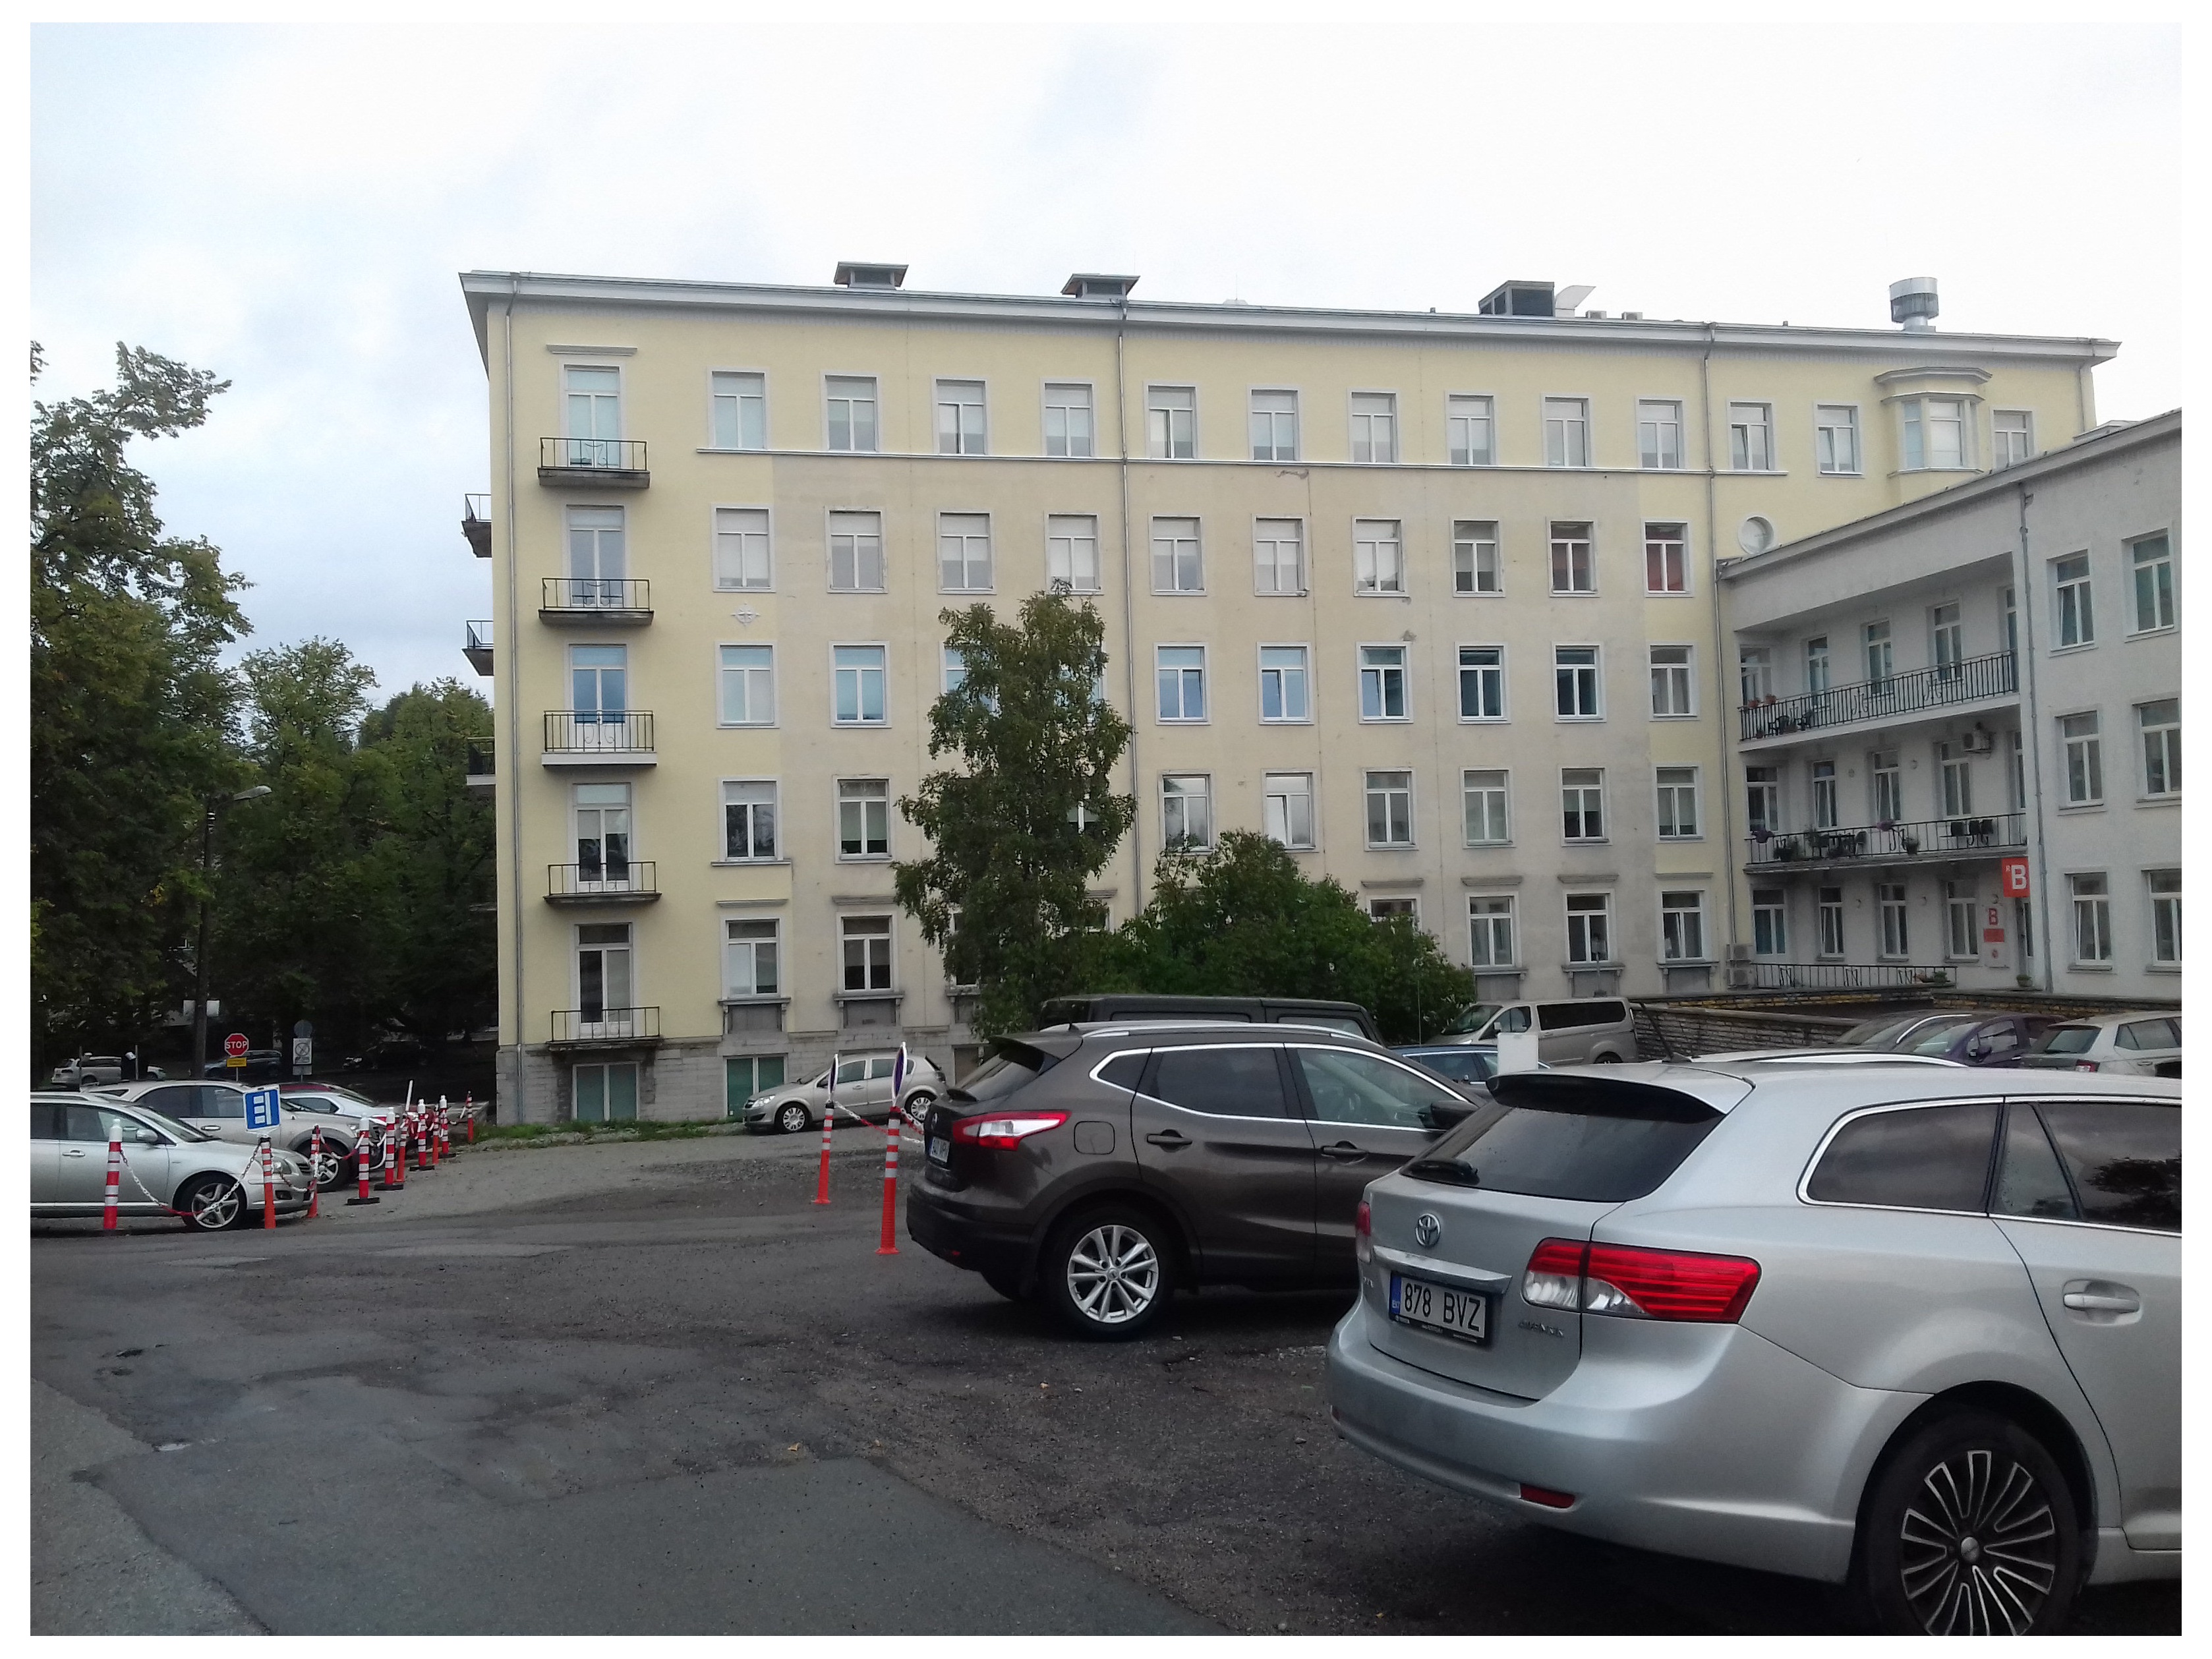 Hooned Tallinna Keskhaigla hoovis rephoto